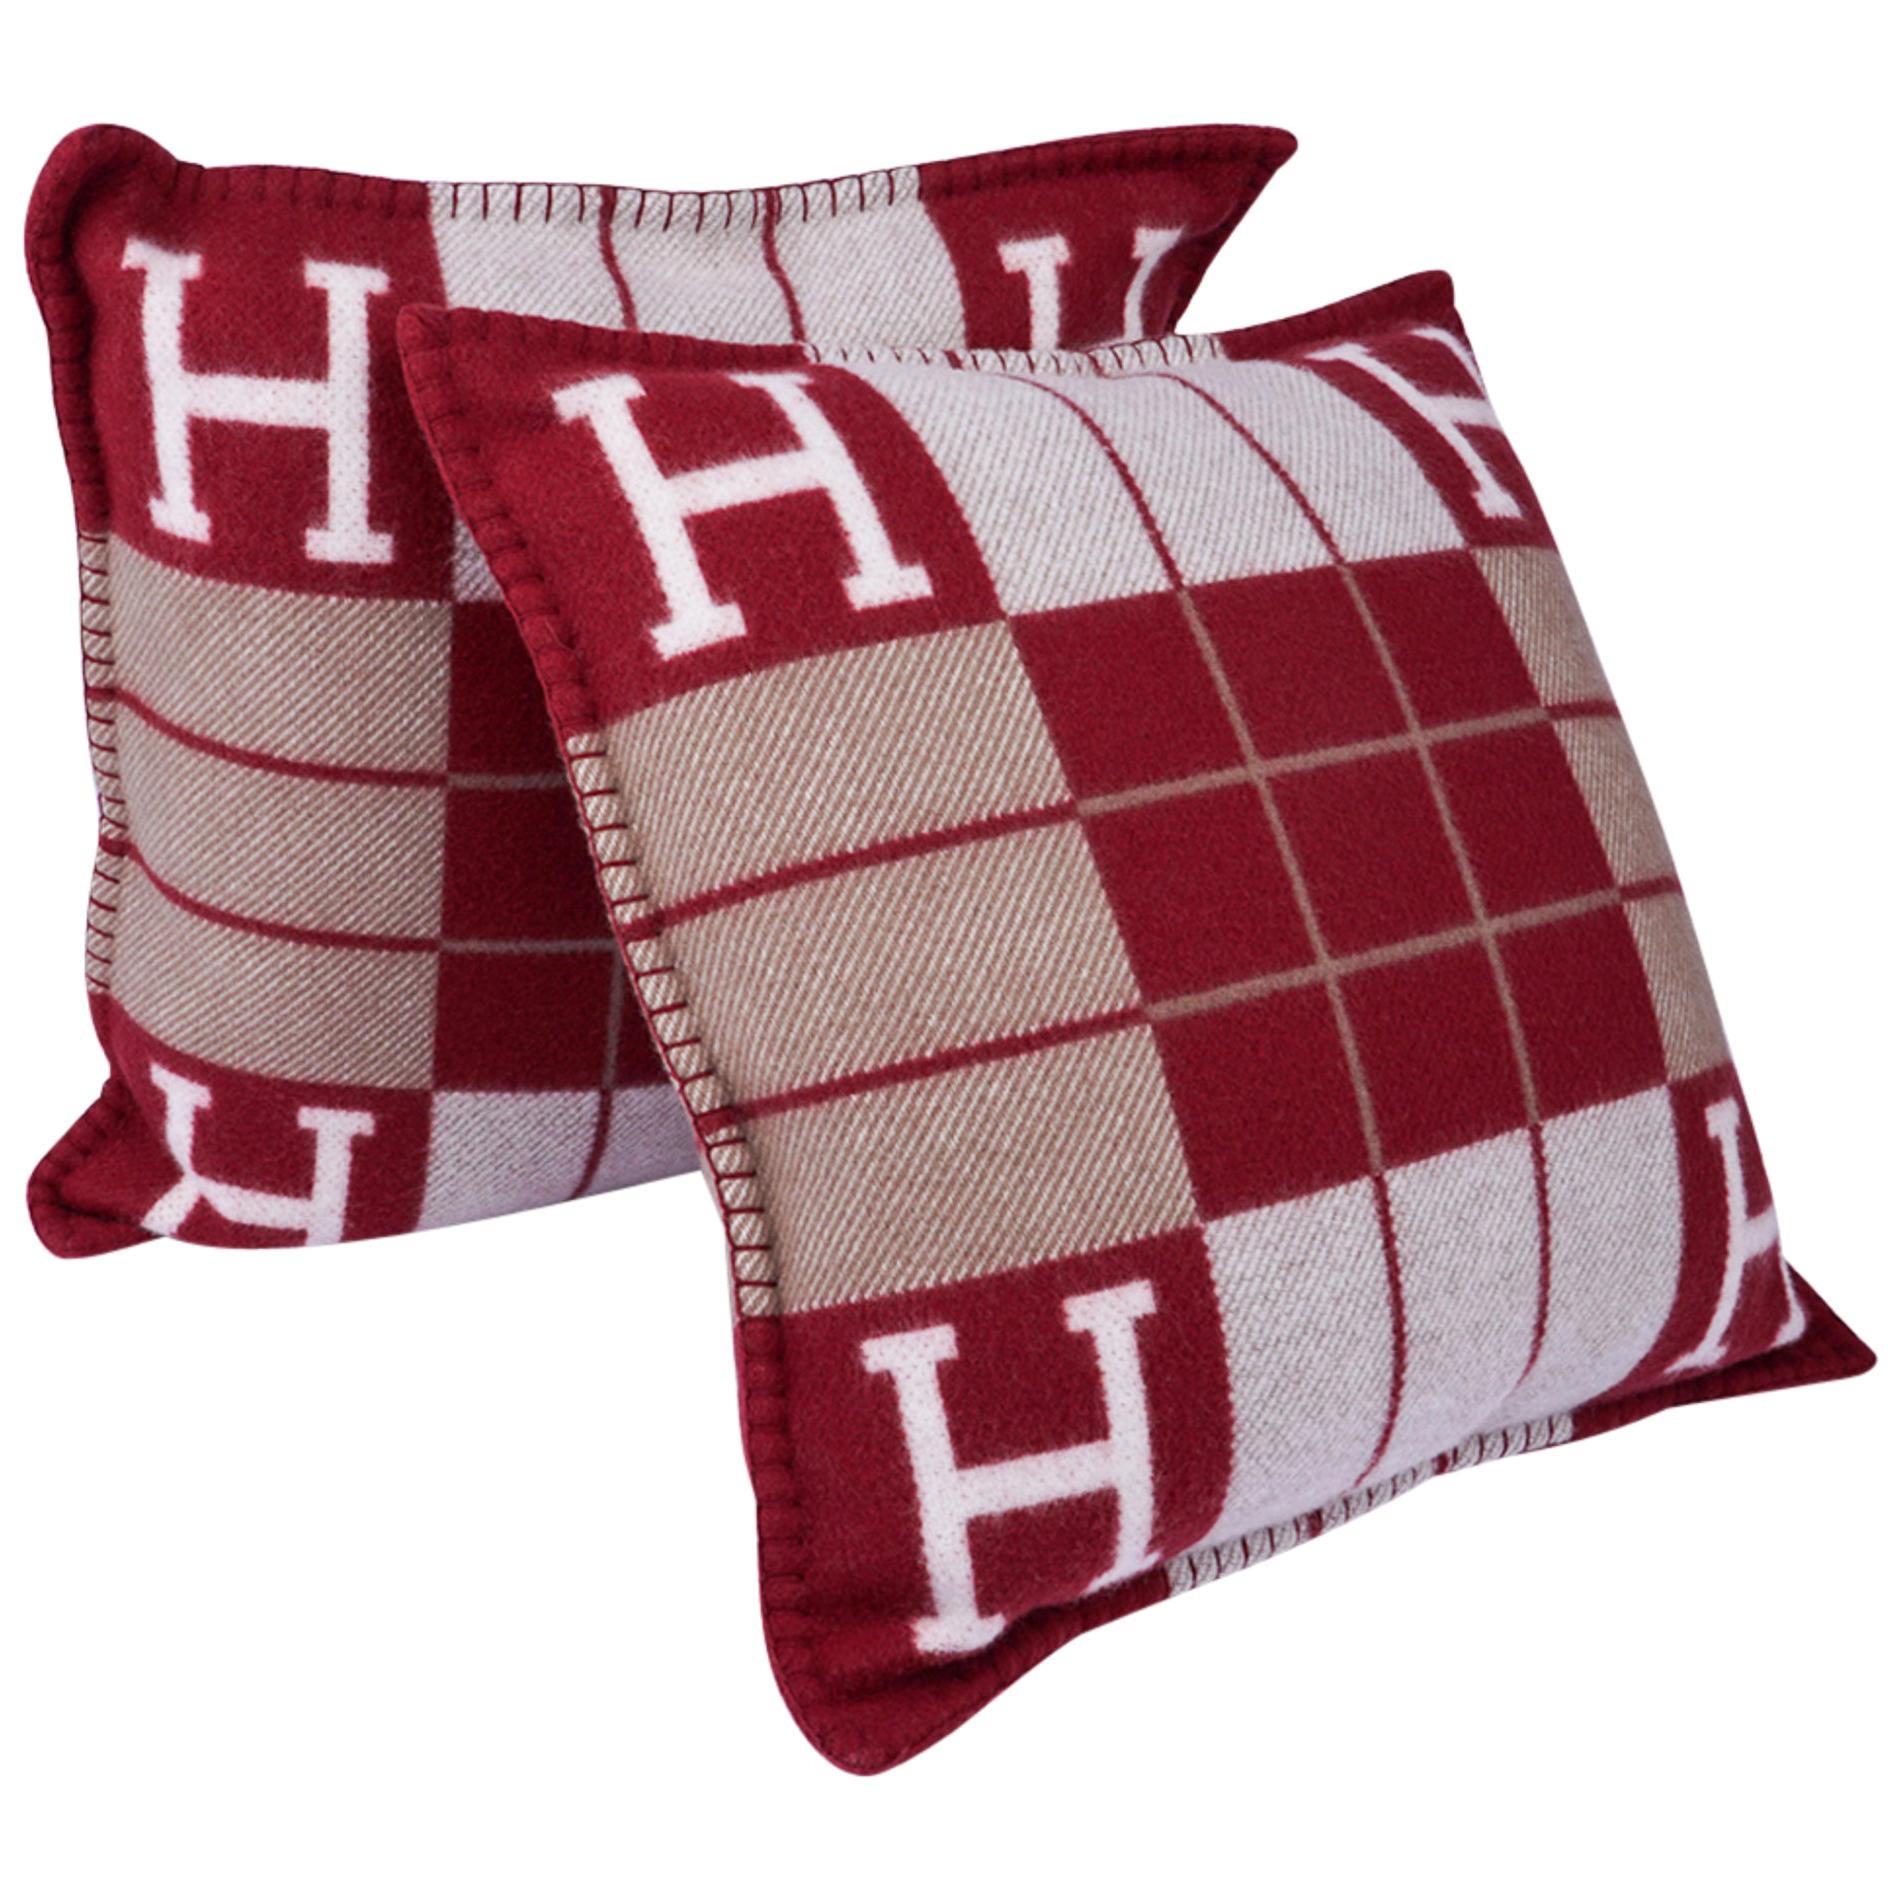 Hermes Avalon Pillow - 19 For Sale on 1stDibs | hermes pillow 